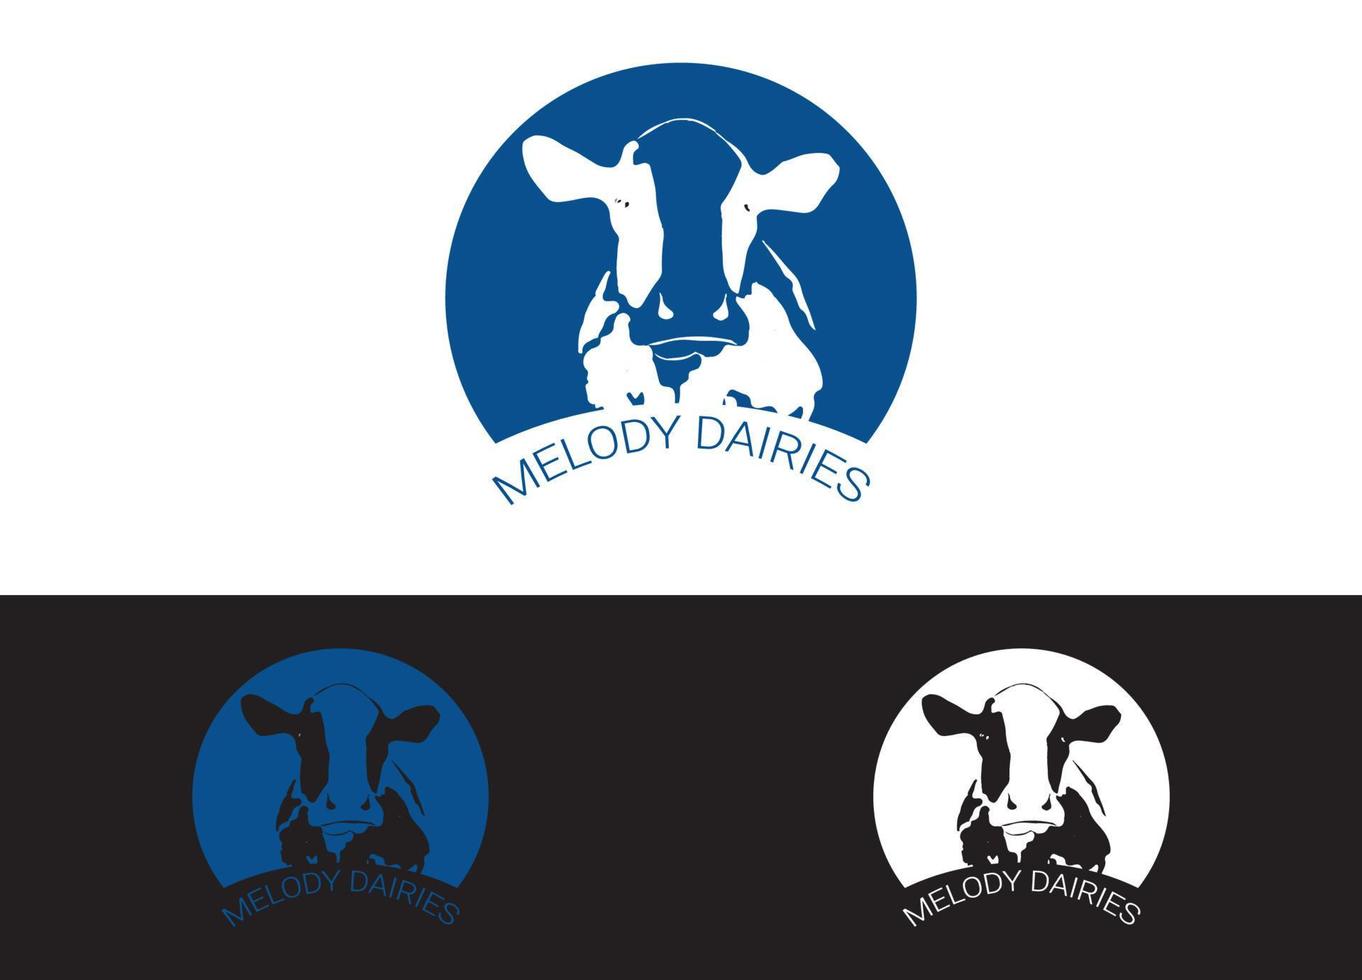 modello di immagine vettoriale del design del logo o dell'icona dell'azienda lattiero-casearia